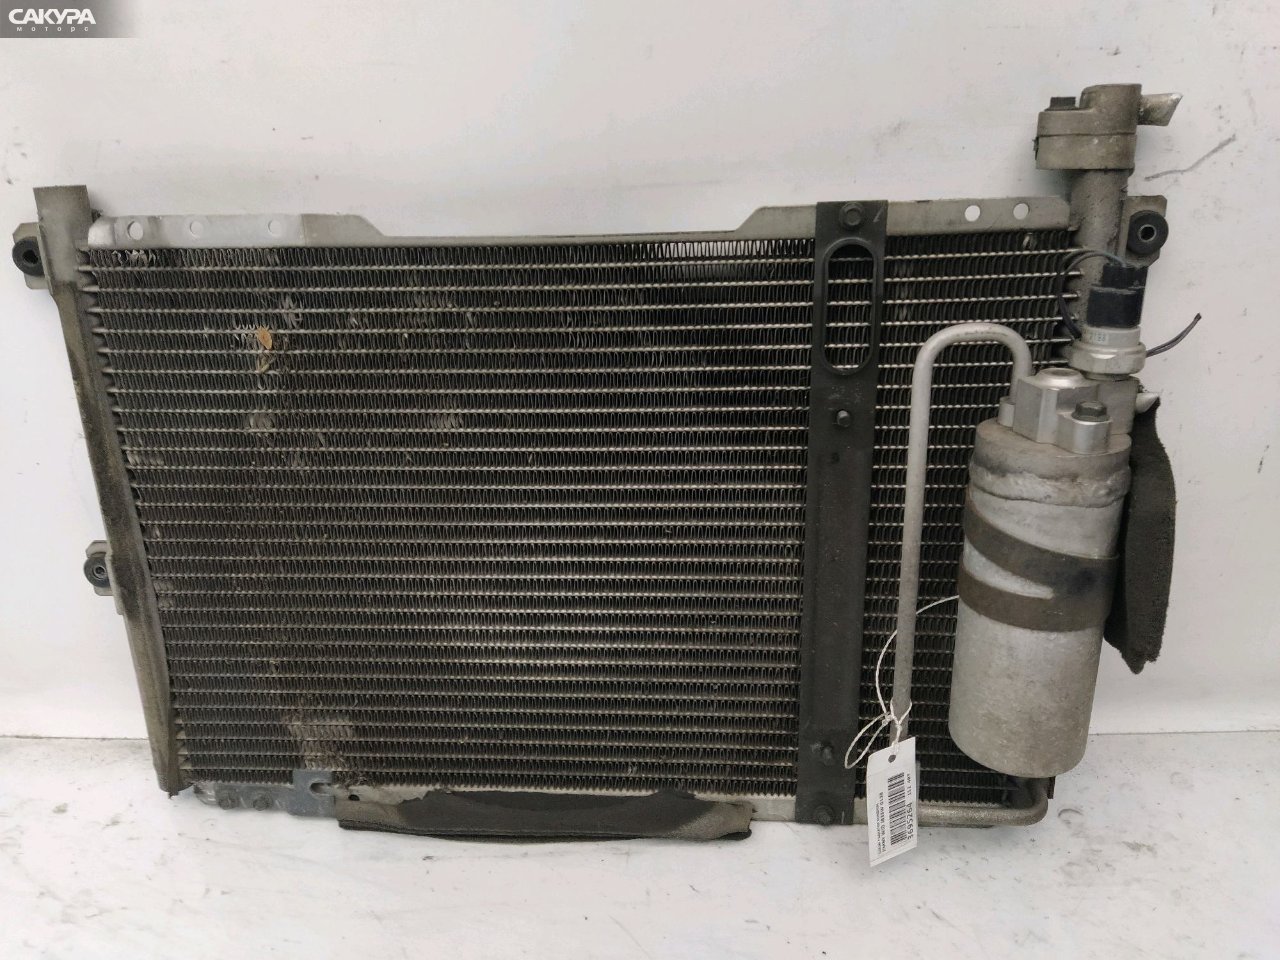 Радиатор кондиционера Suzuki Jimny Wide JB33W G13B: купить в Сакура Красноярск.